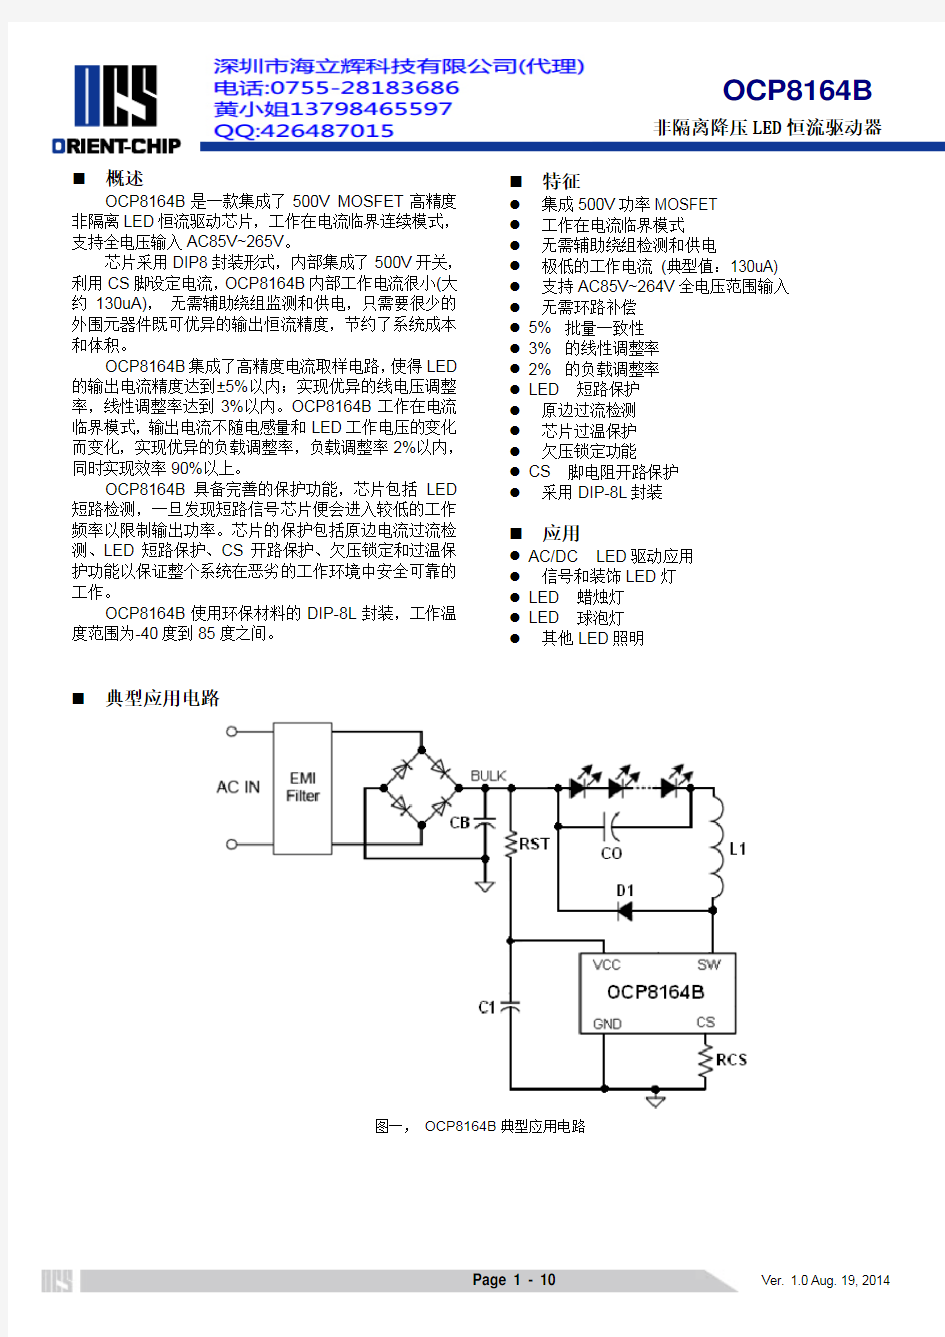 OCP8164B datasheet ver 1.0_20140819_Chinese (2)